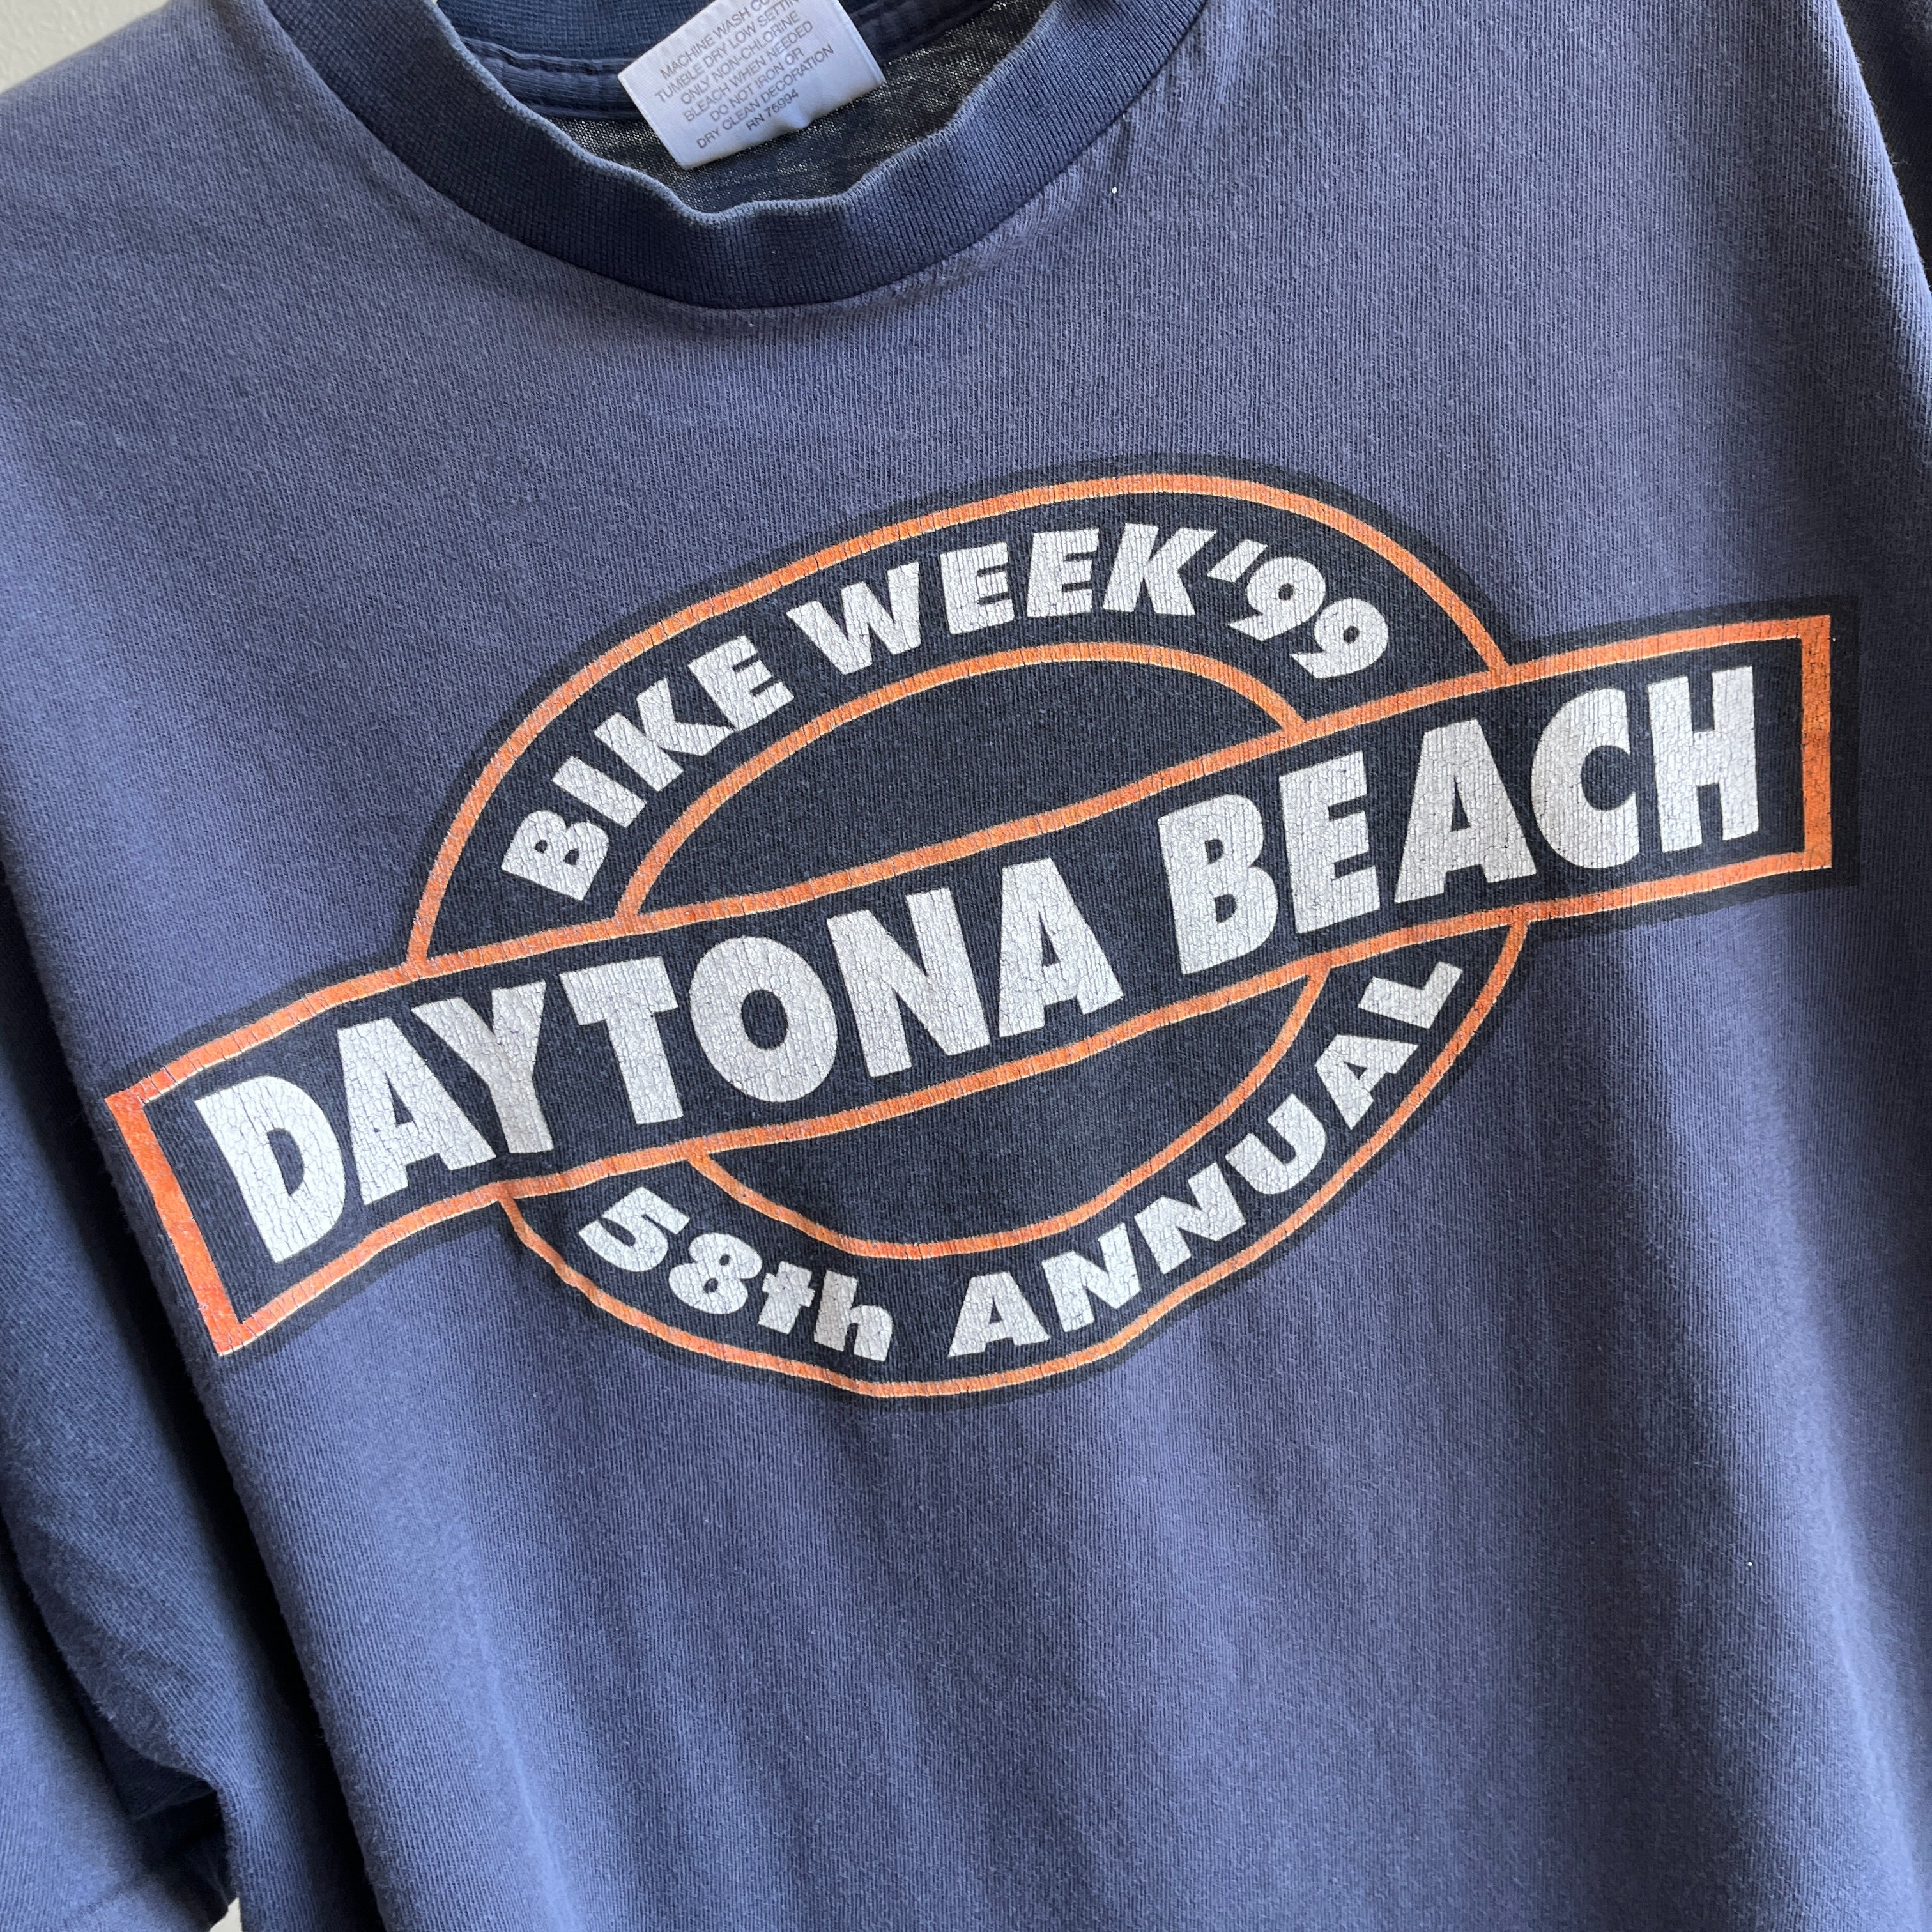 1999 Boxy Daytona Beach 58e semaine annuelle du vélo - La. Arrière!!